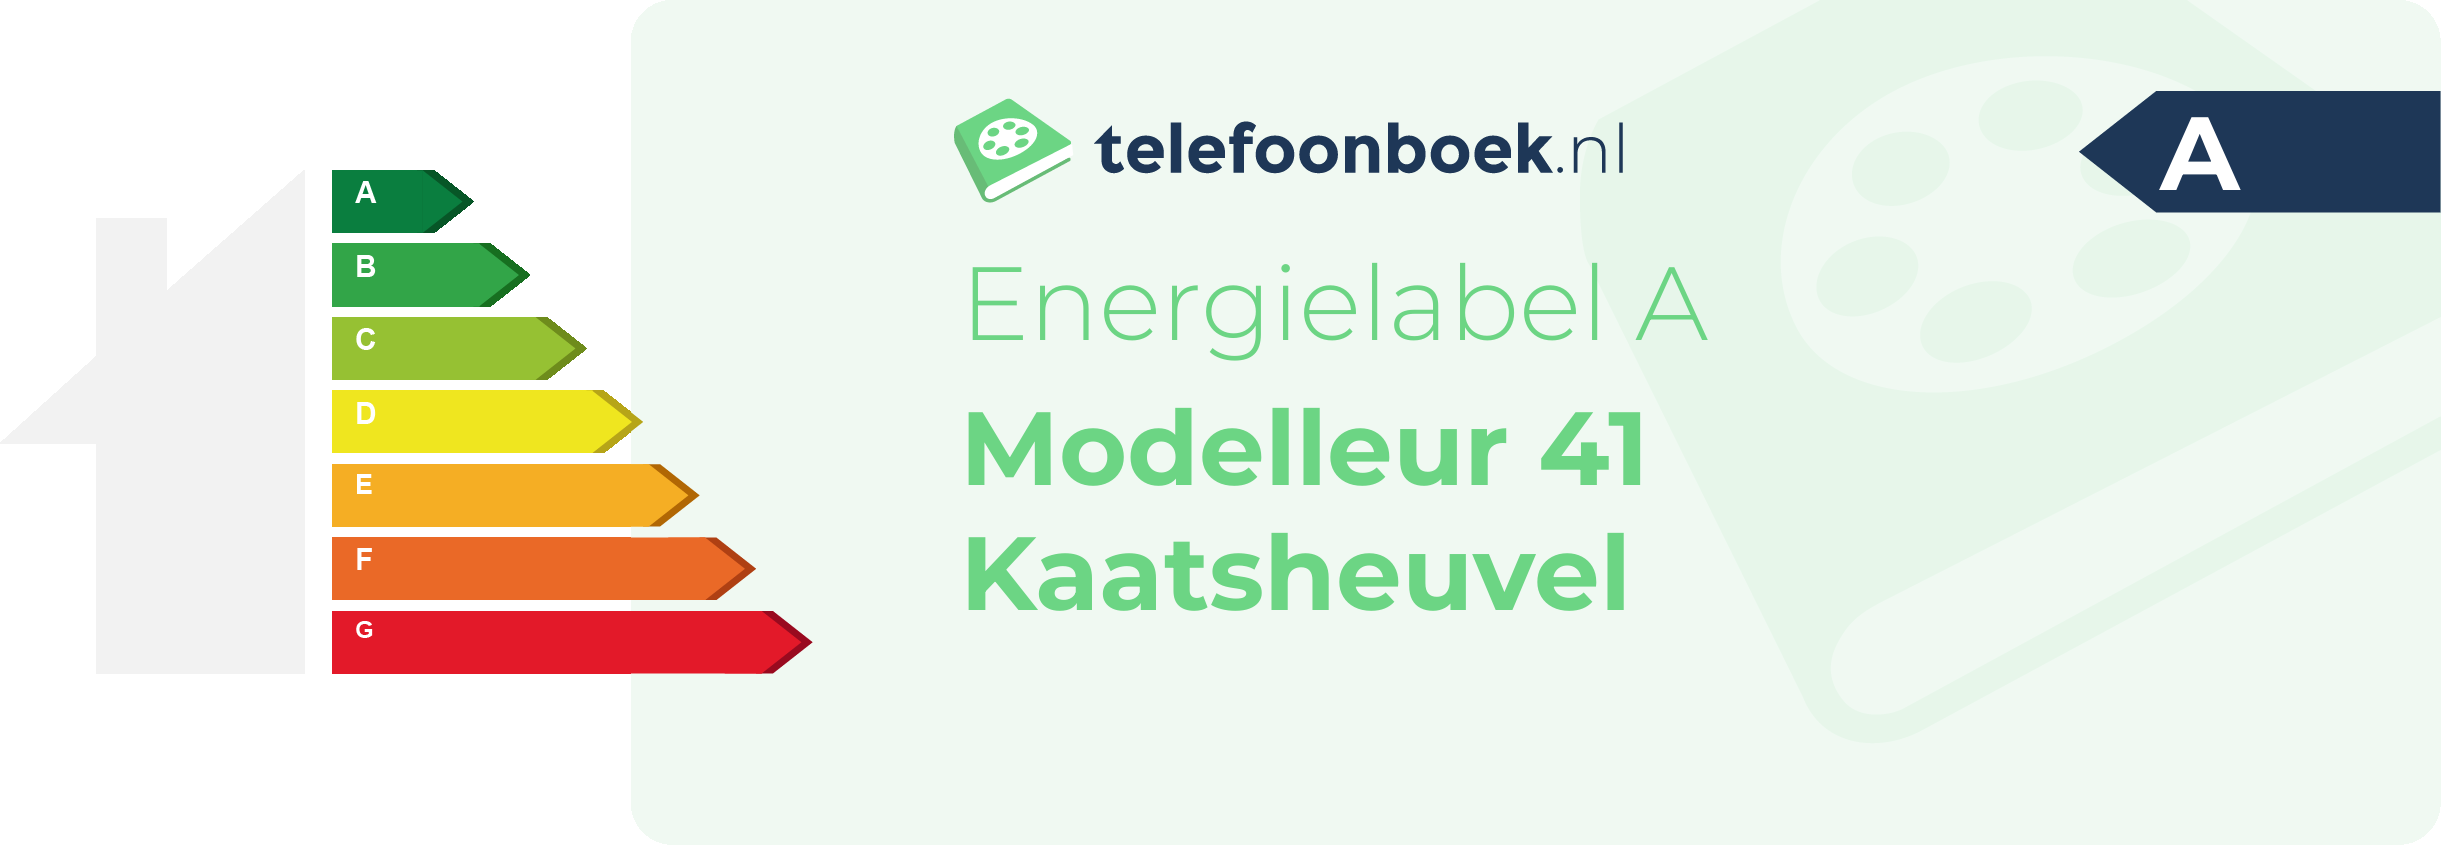 Energielabel Modelleur 41 Kaatsheuvel